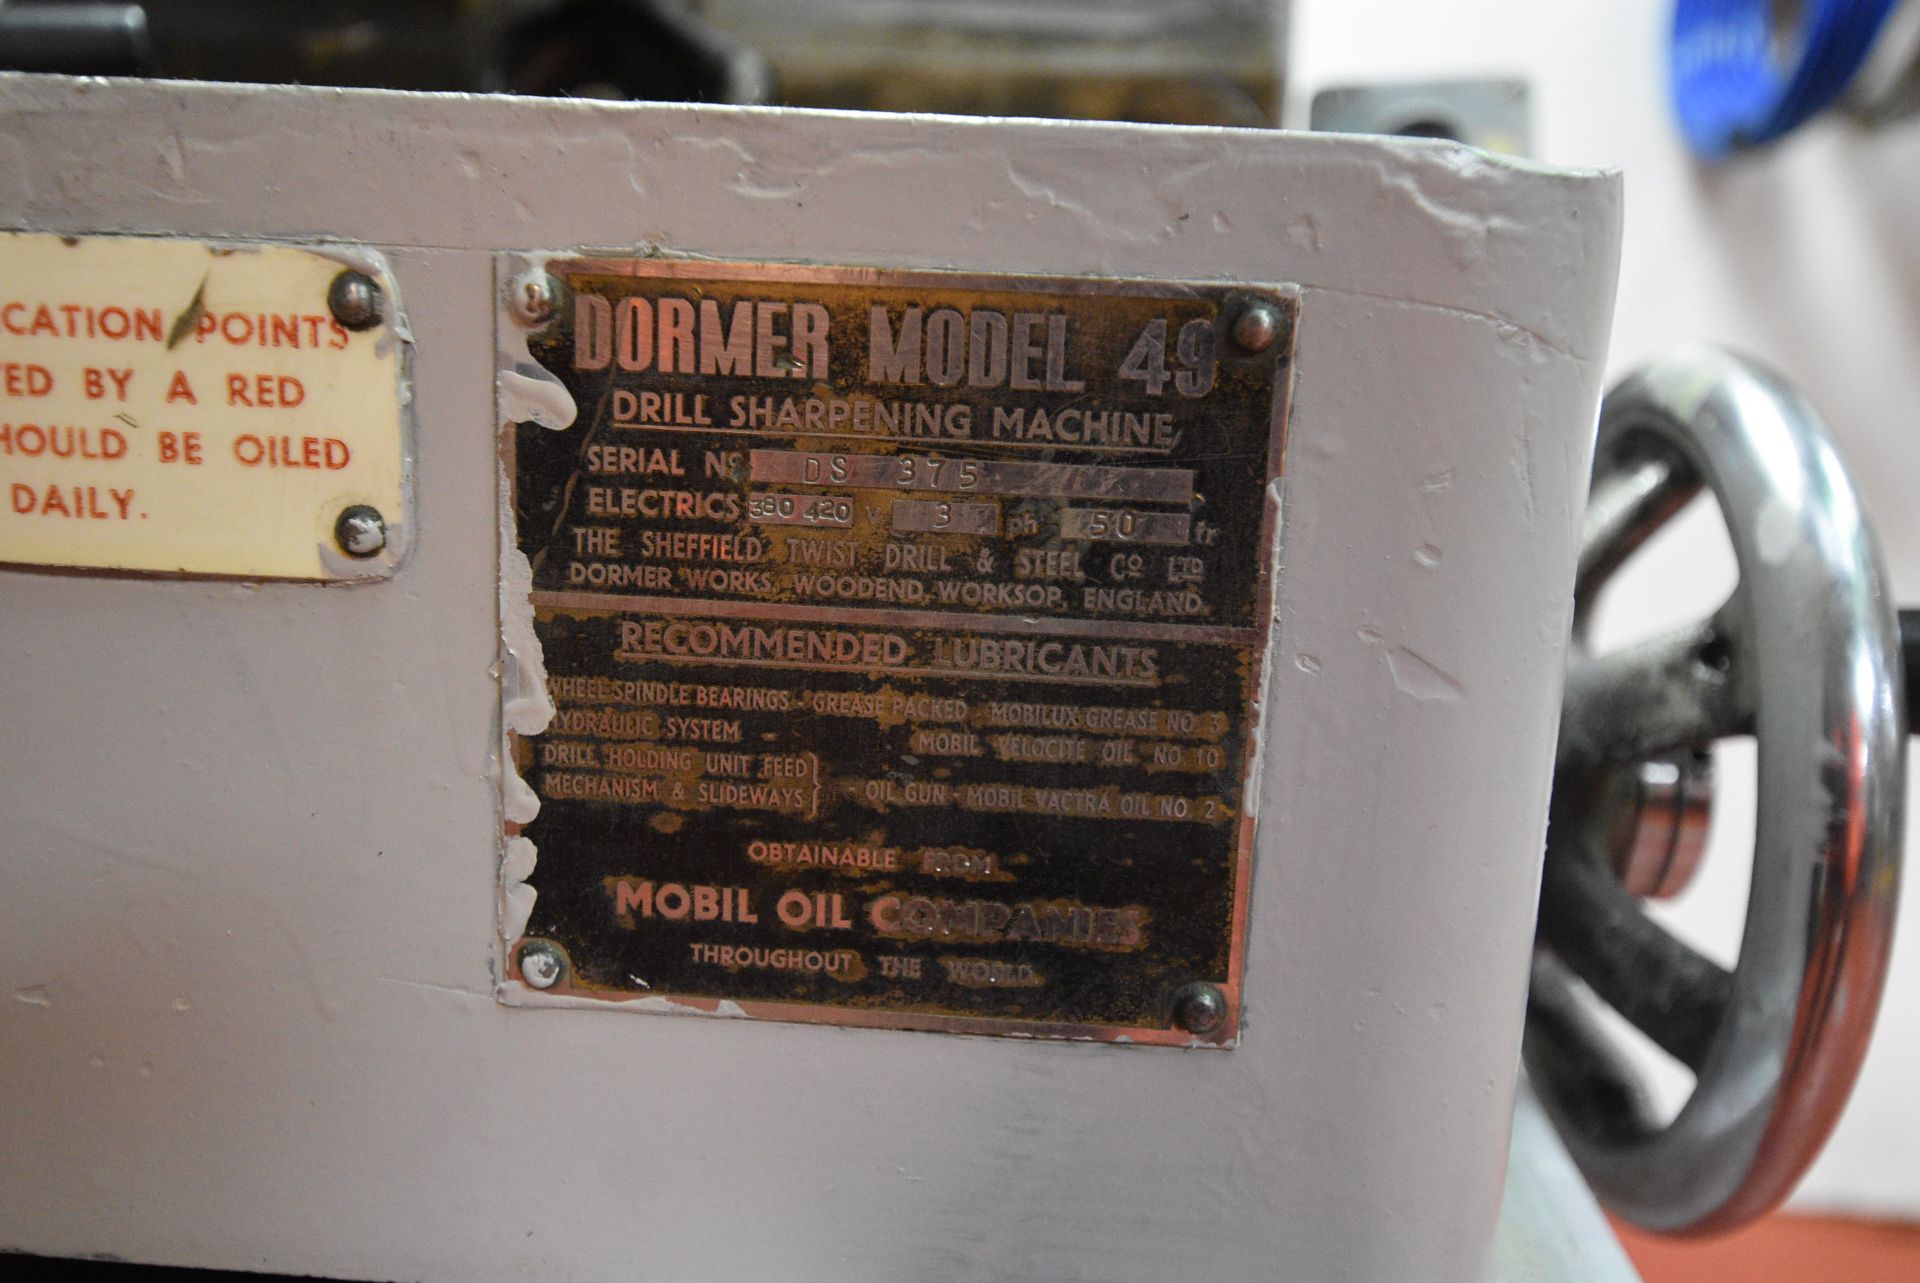 Dormer 49 TOOL GRINDER, serial no. DS375 - Image 7 of 8